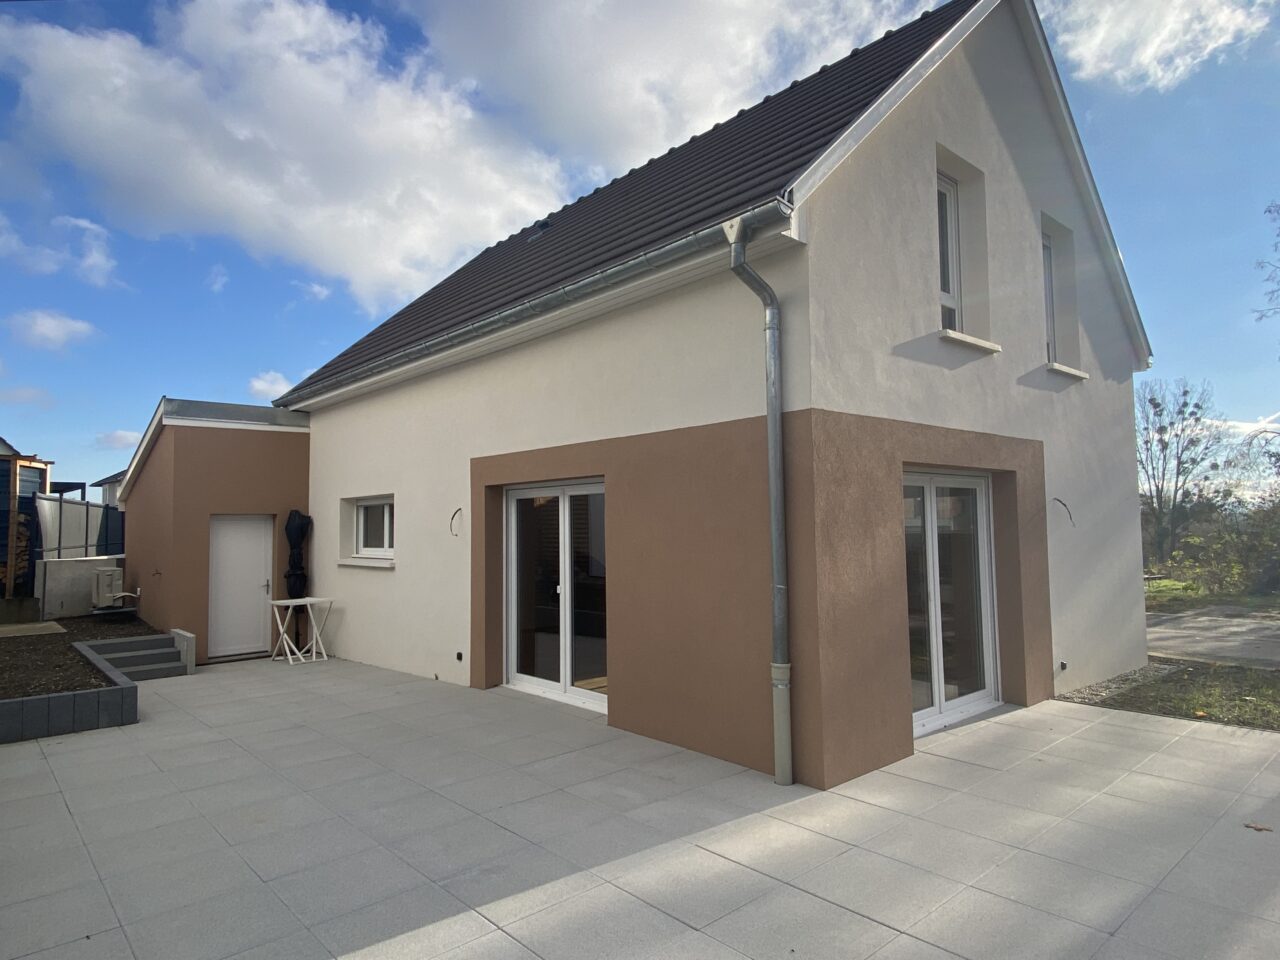 Bischwiller, belle maison neuve avec open space, terrasse, garage.